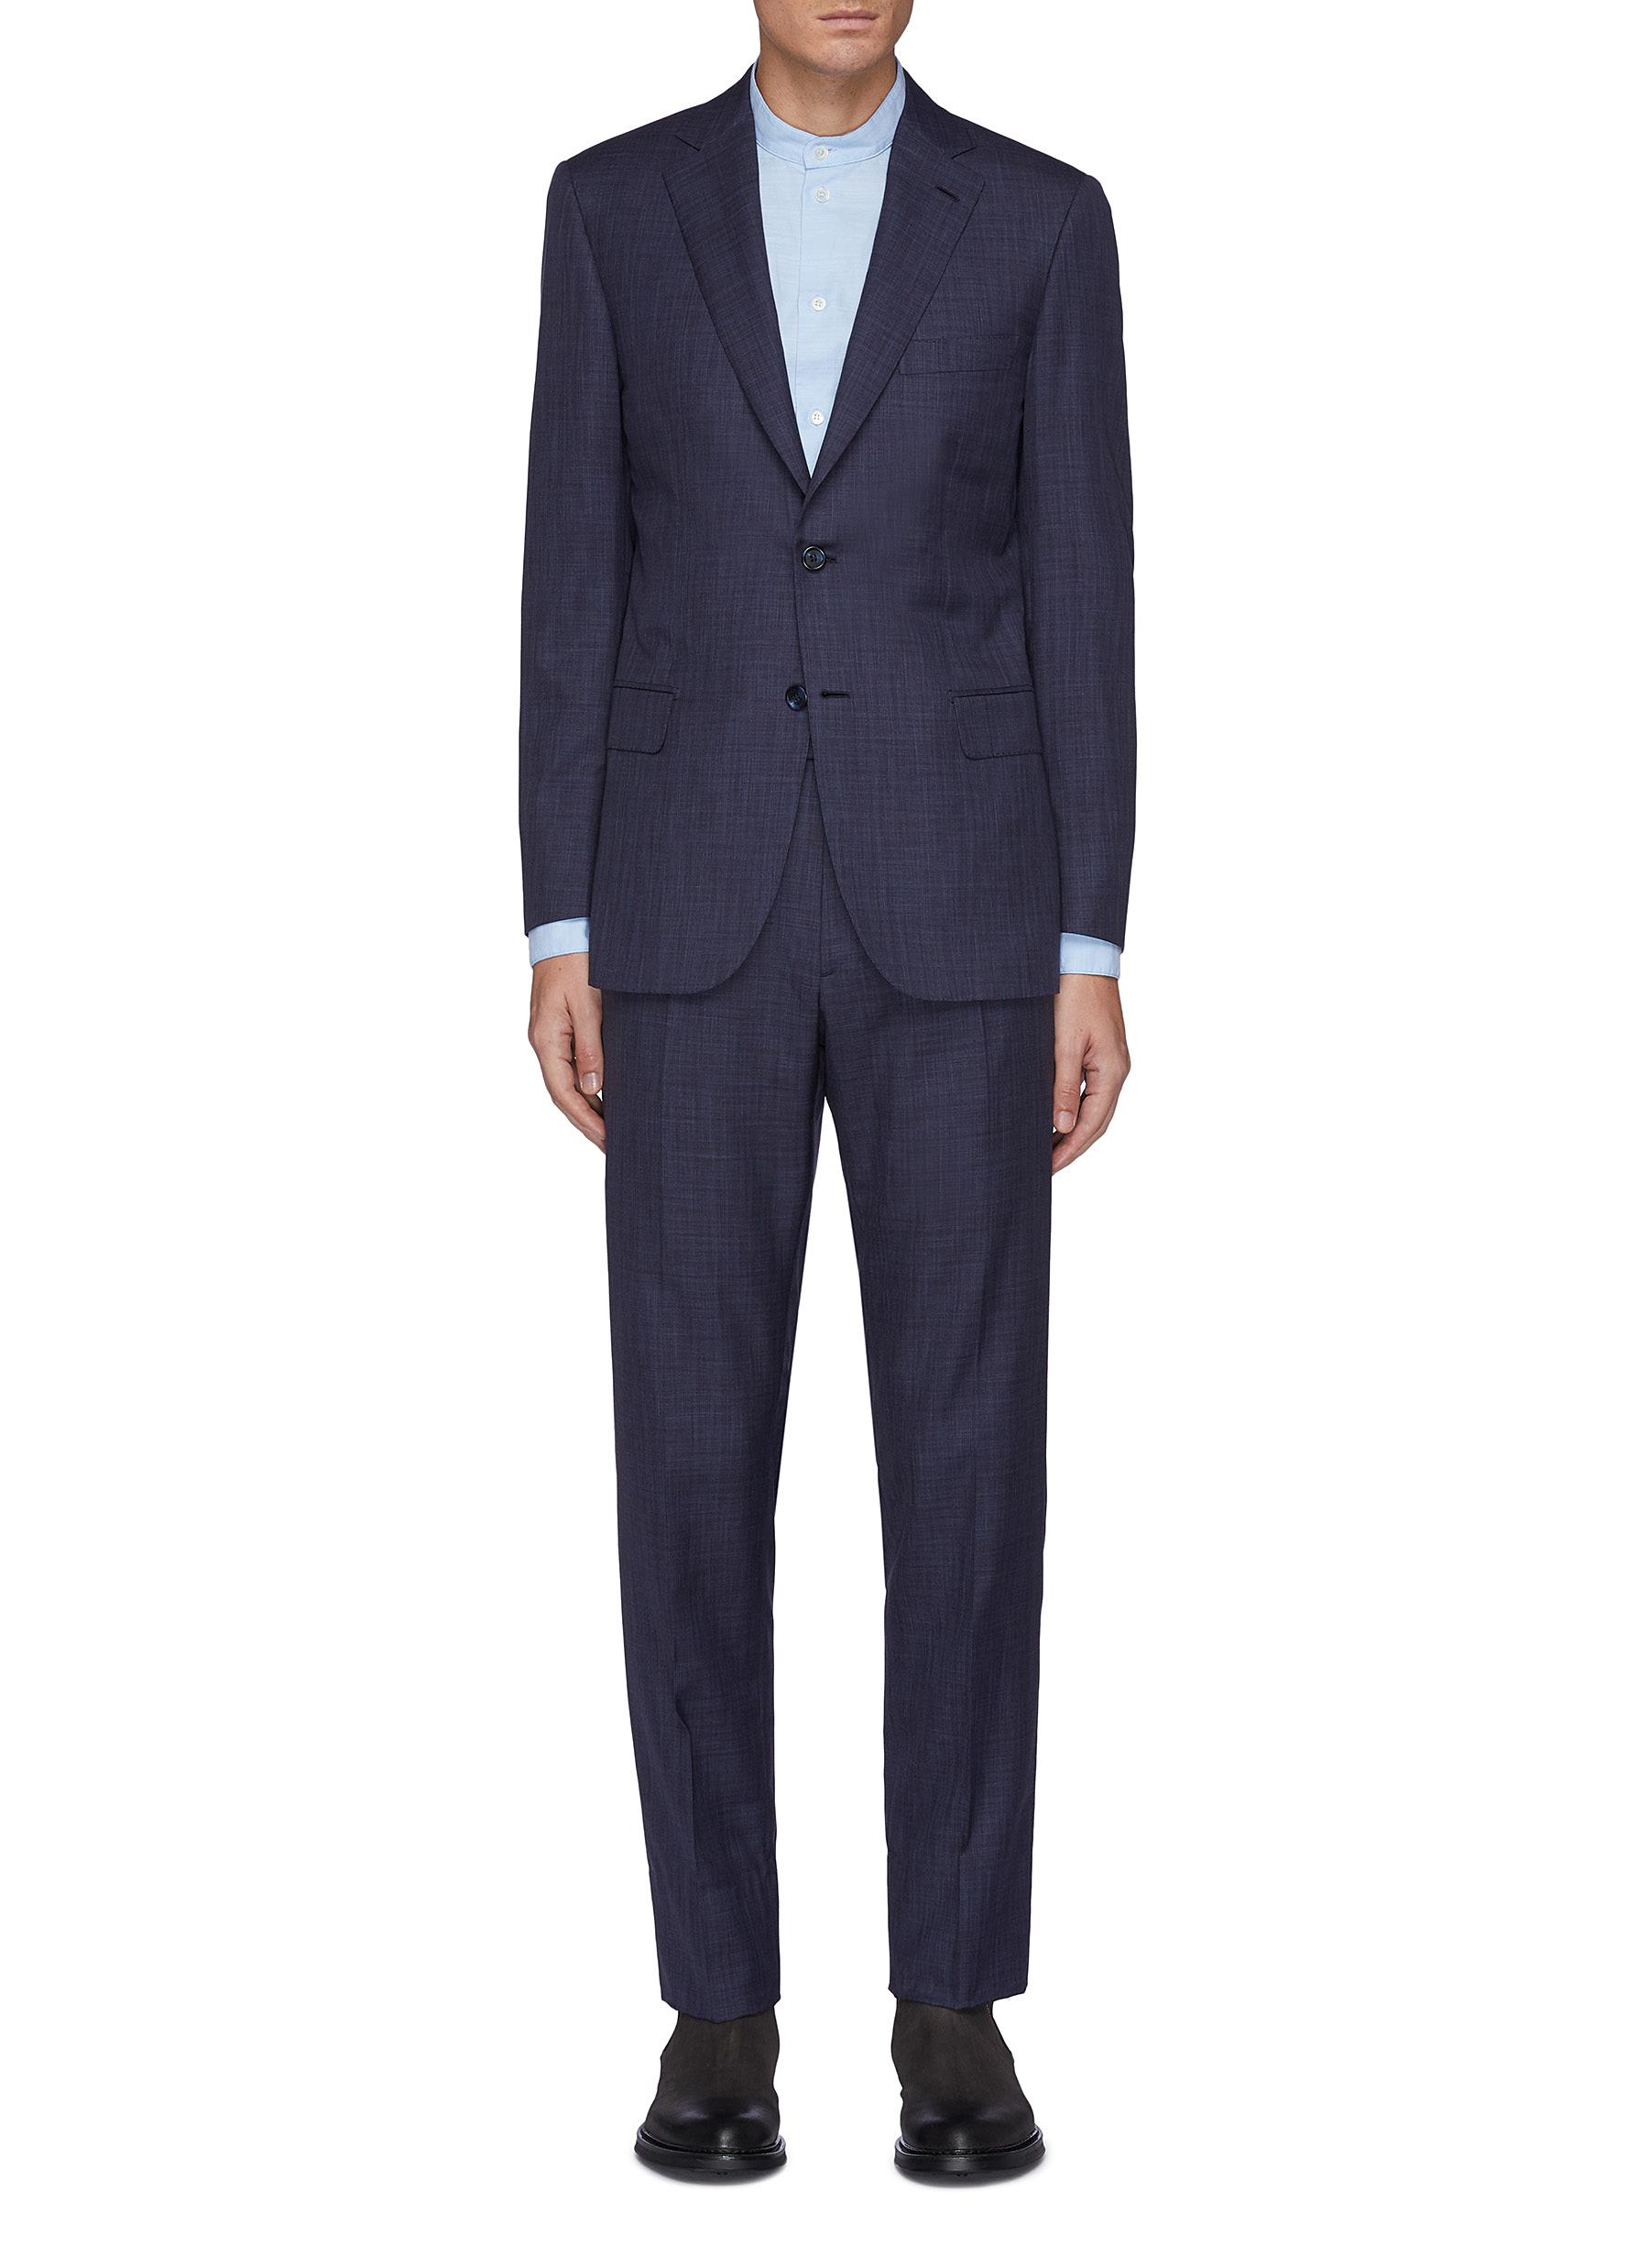 Brunico' notch lapel wool blend suit